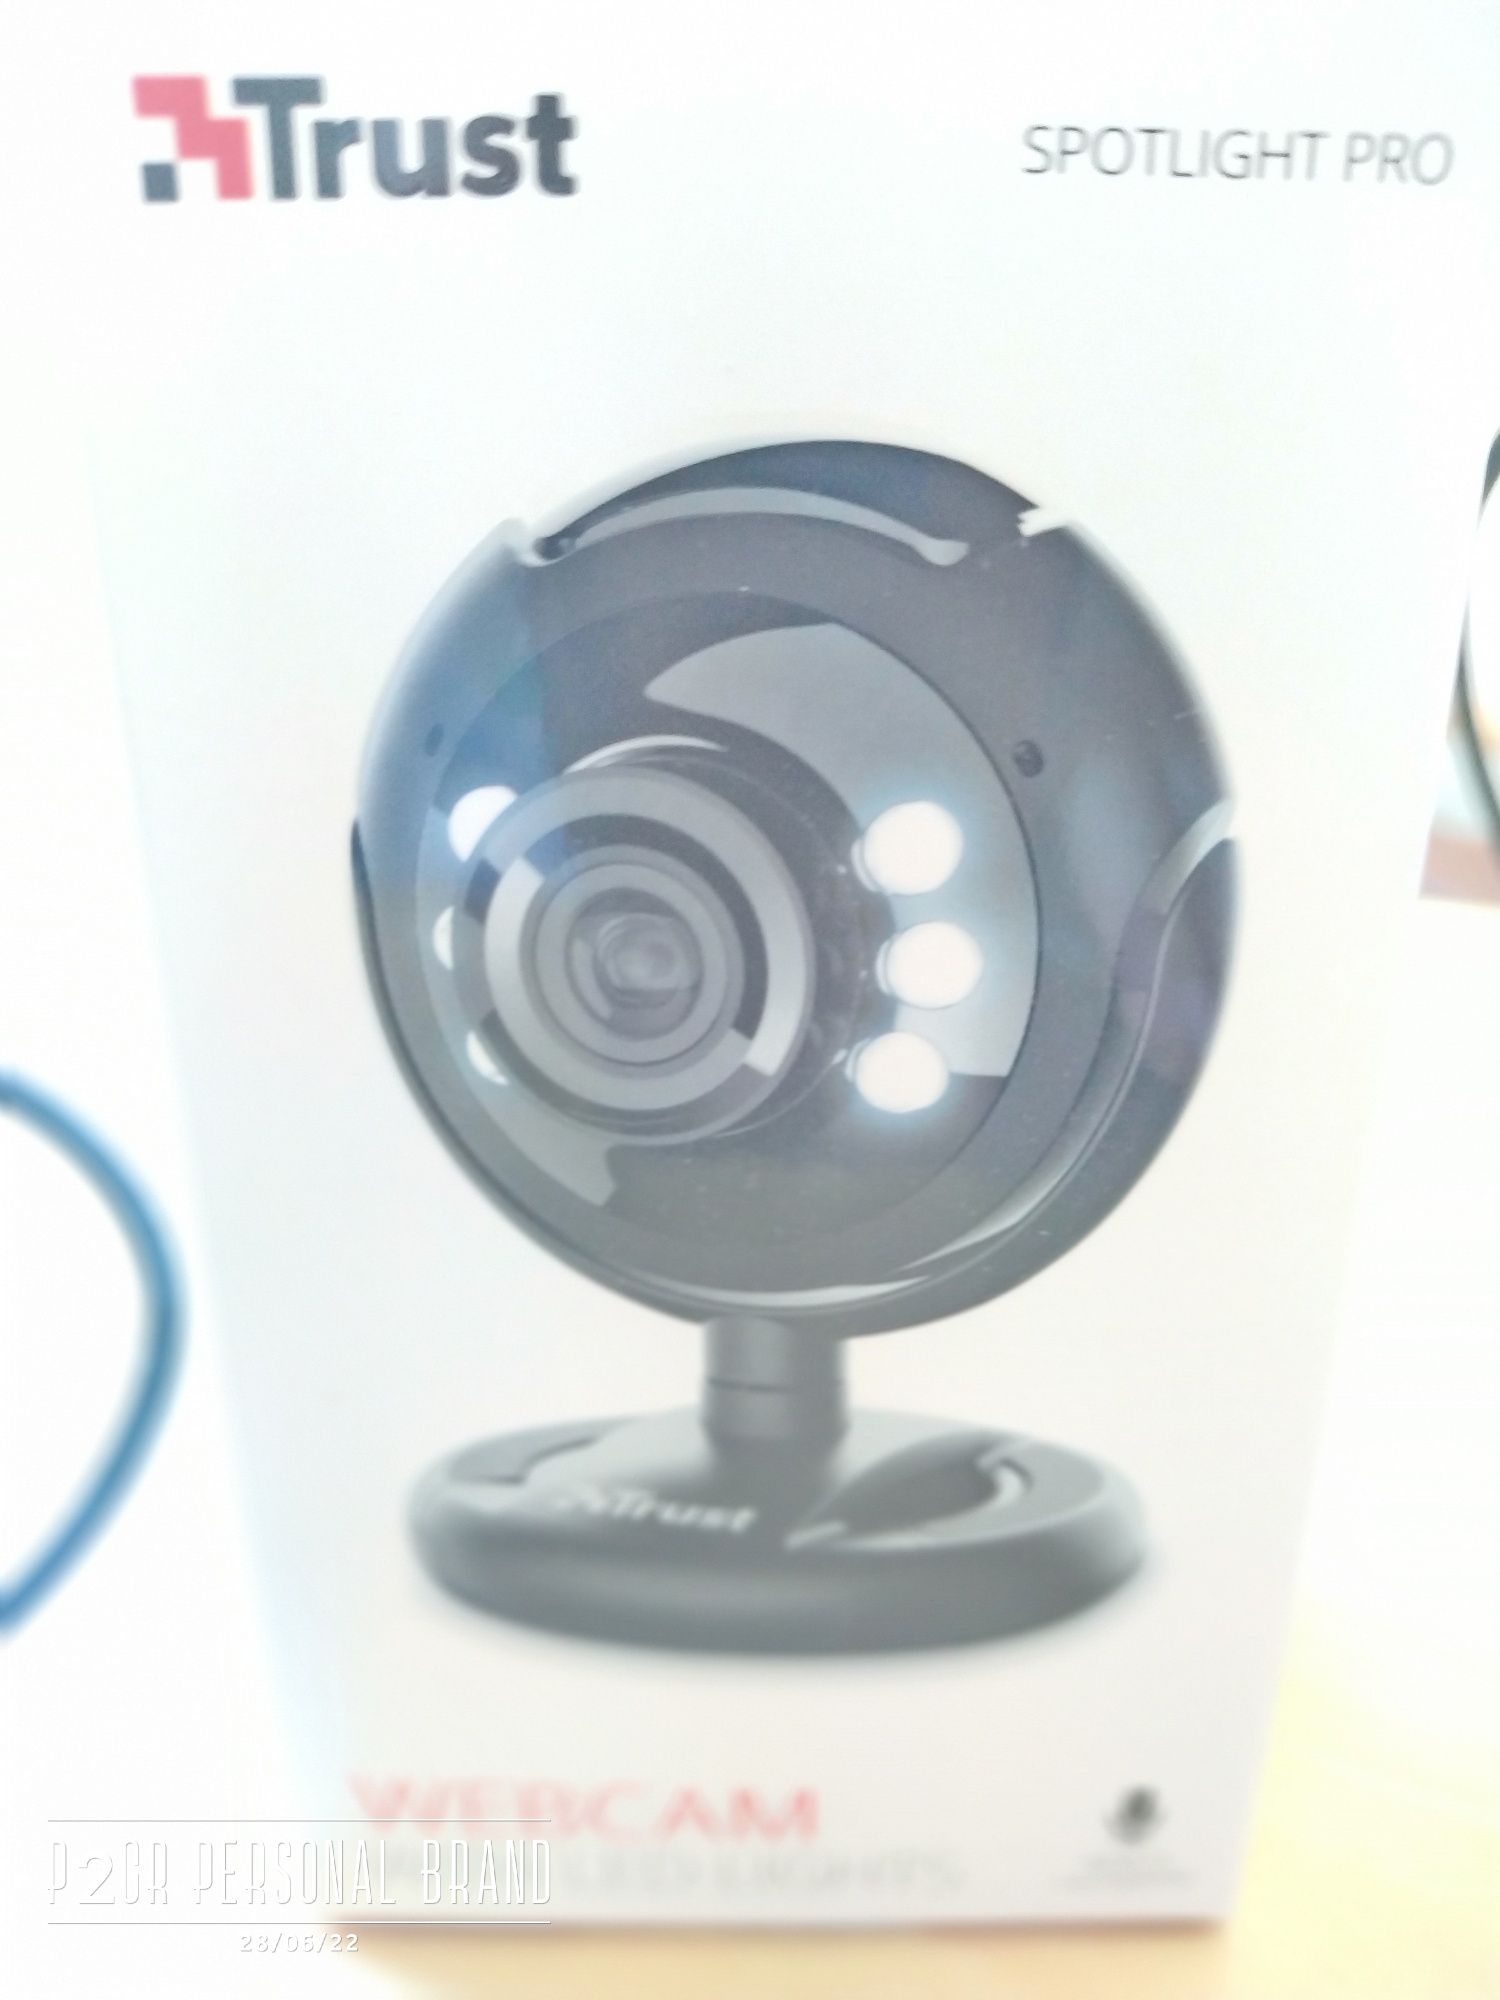 Webcam com spotlight  para computador da marca Trust.